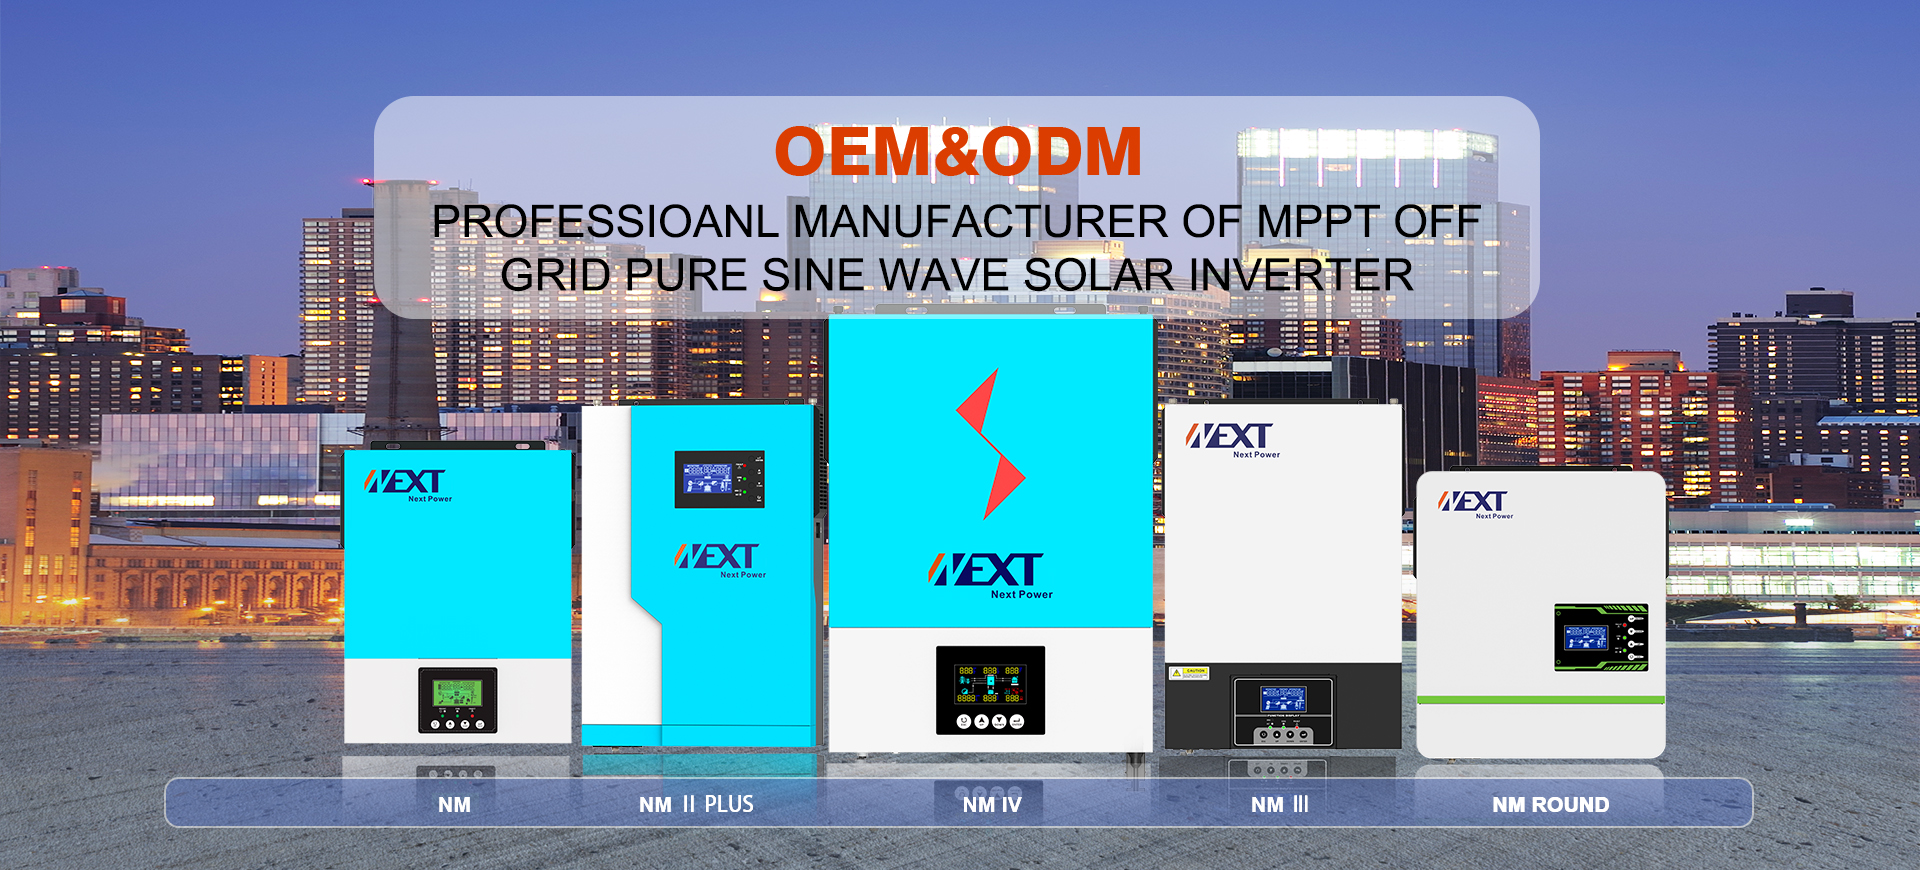 1100va Solar Inverter For 60 Ac Amp Power